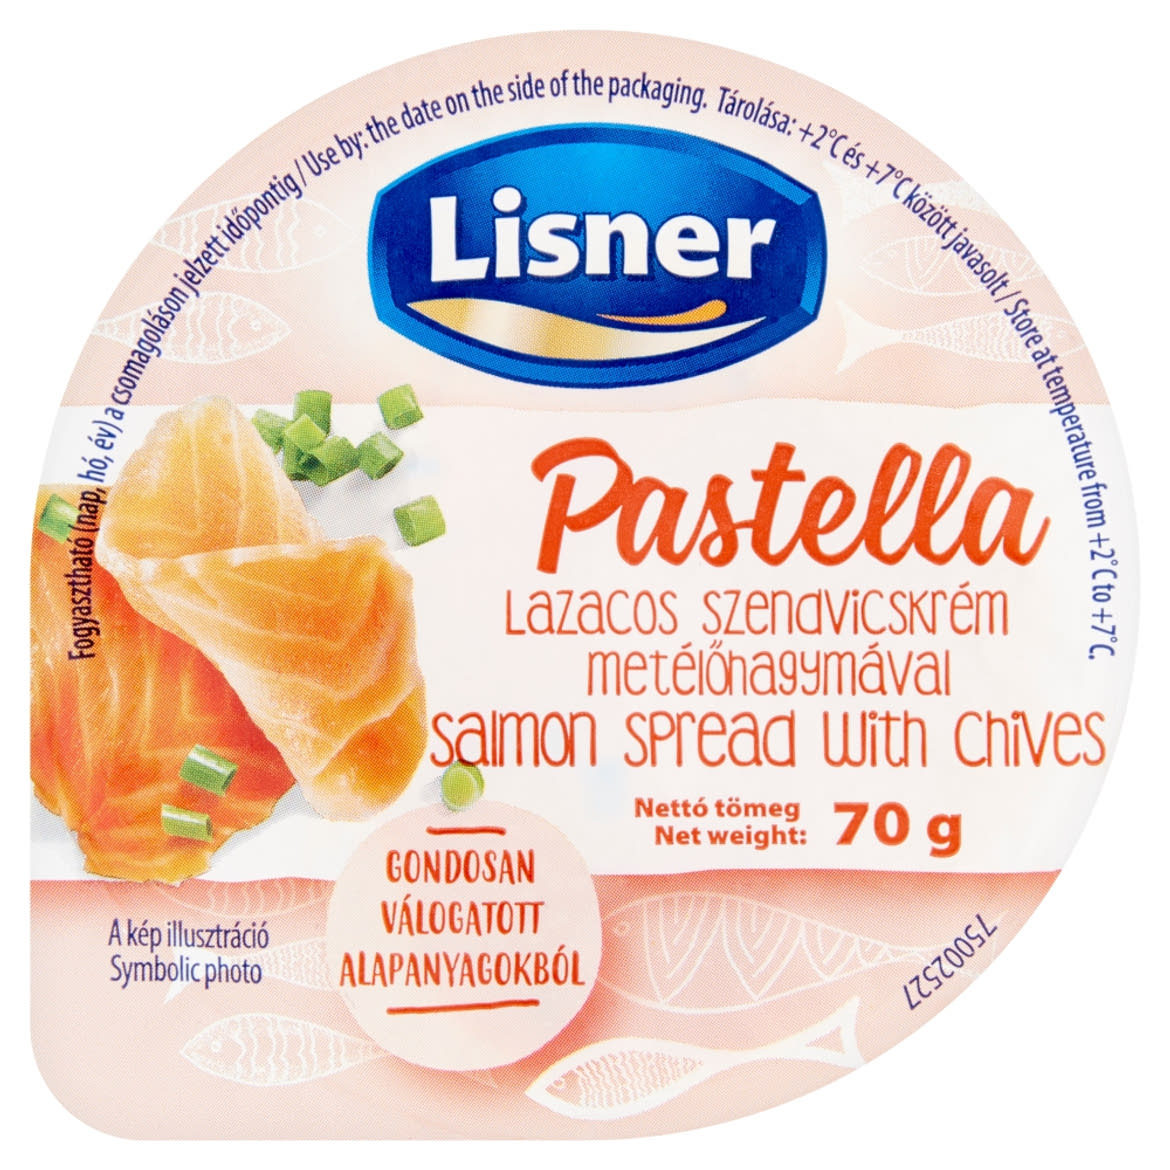 Lisner Pastella lazacos szendvicskrém metélőhagymával 70 g